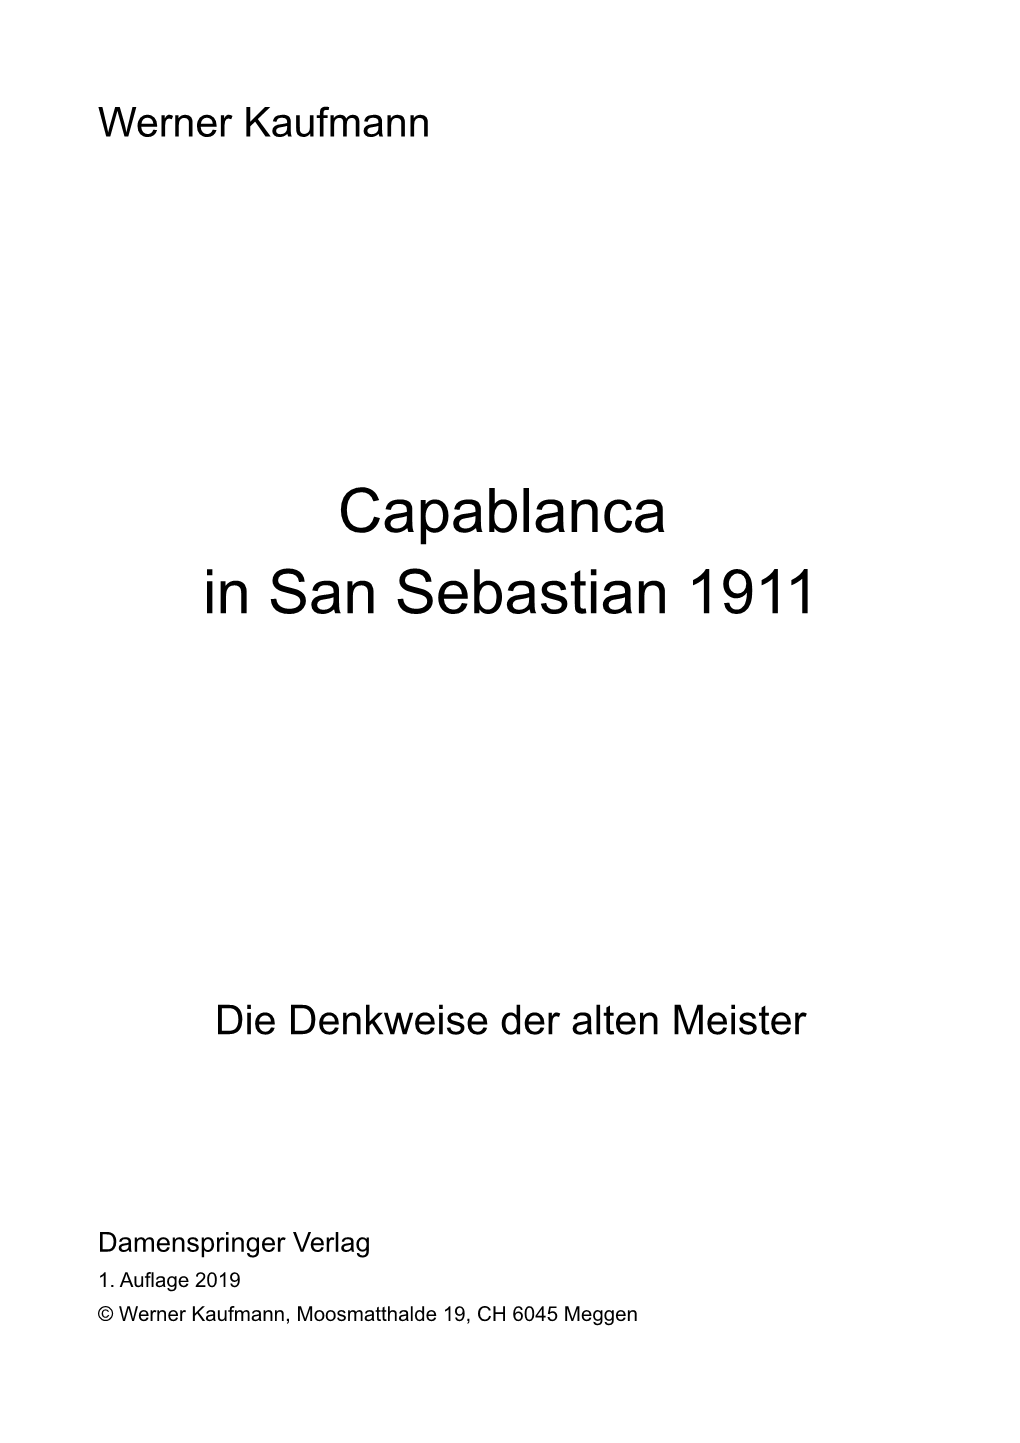 Capablanca in San Sebastian 1911